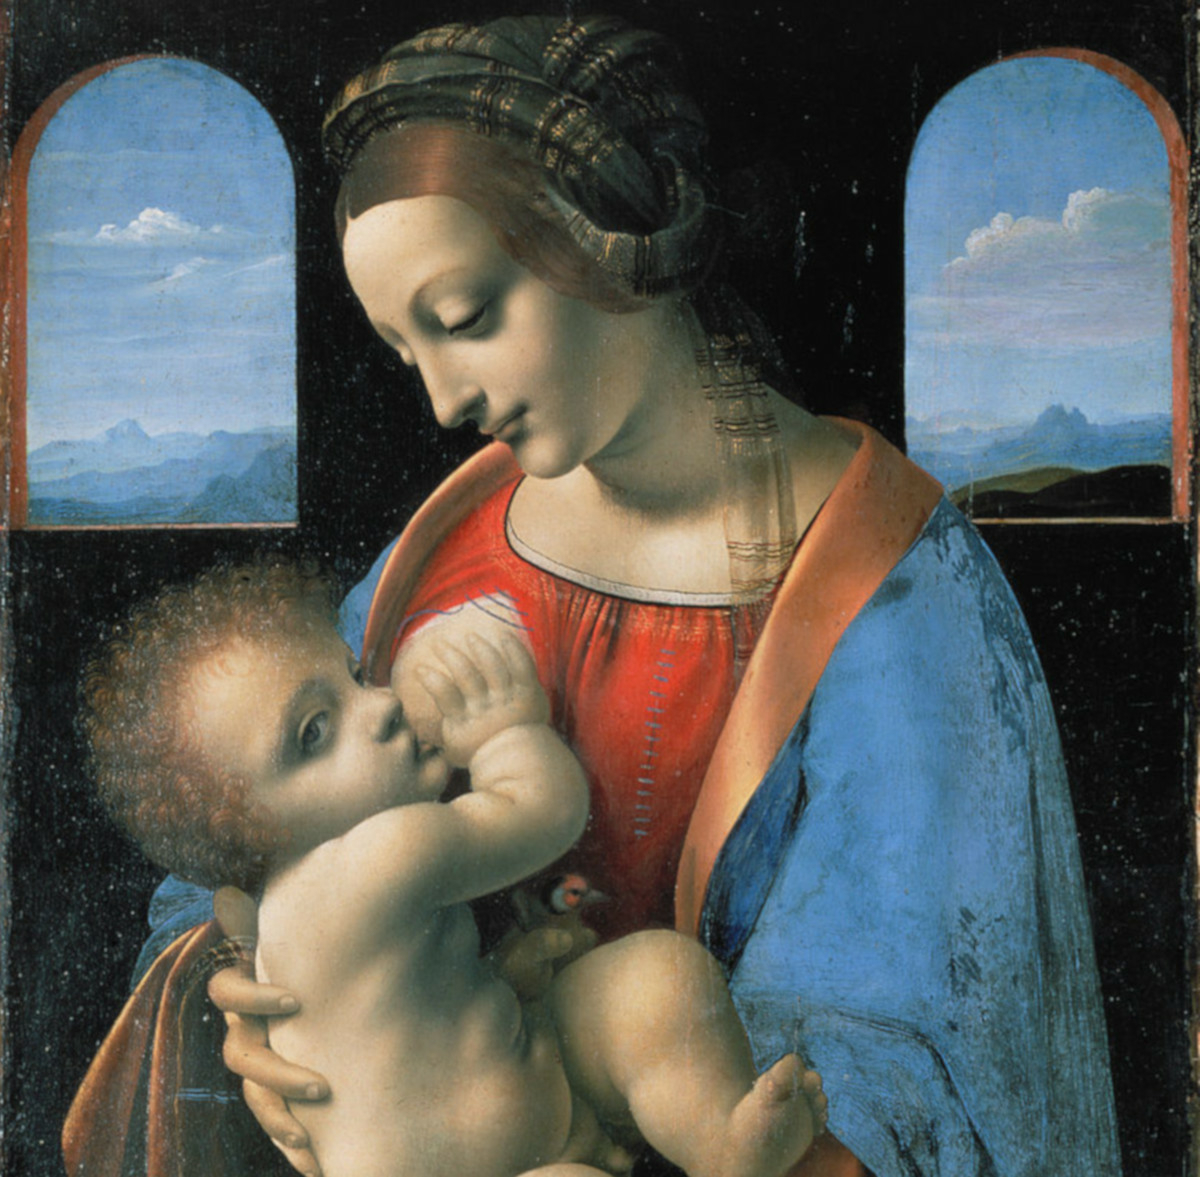 Цифровая копия картины Да Винчи из коллекции Эрмитажа продана за 150,5 тыс. долларов